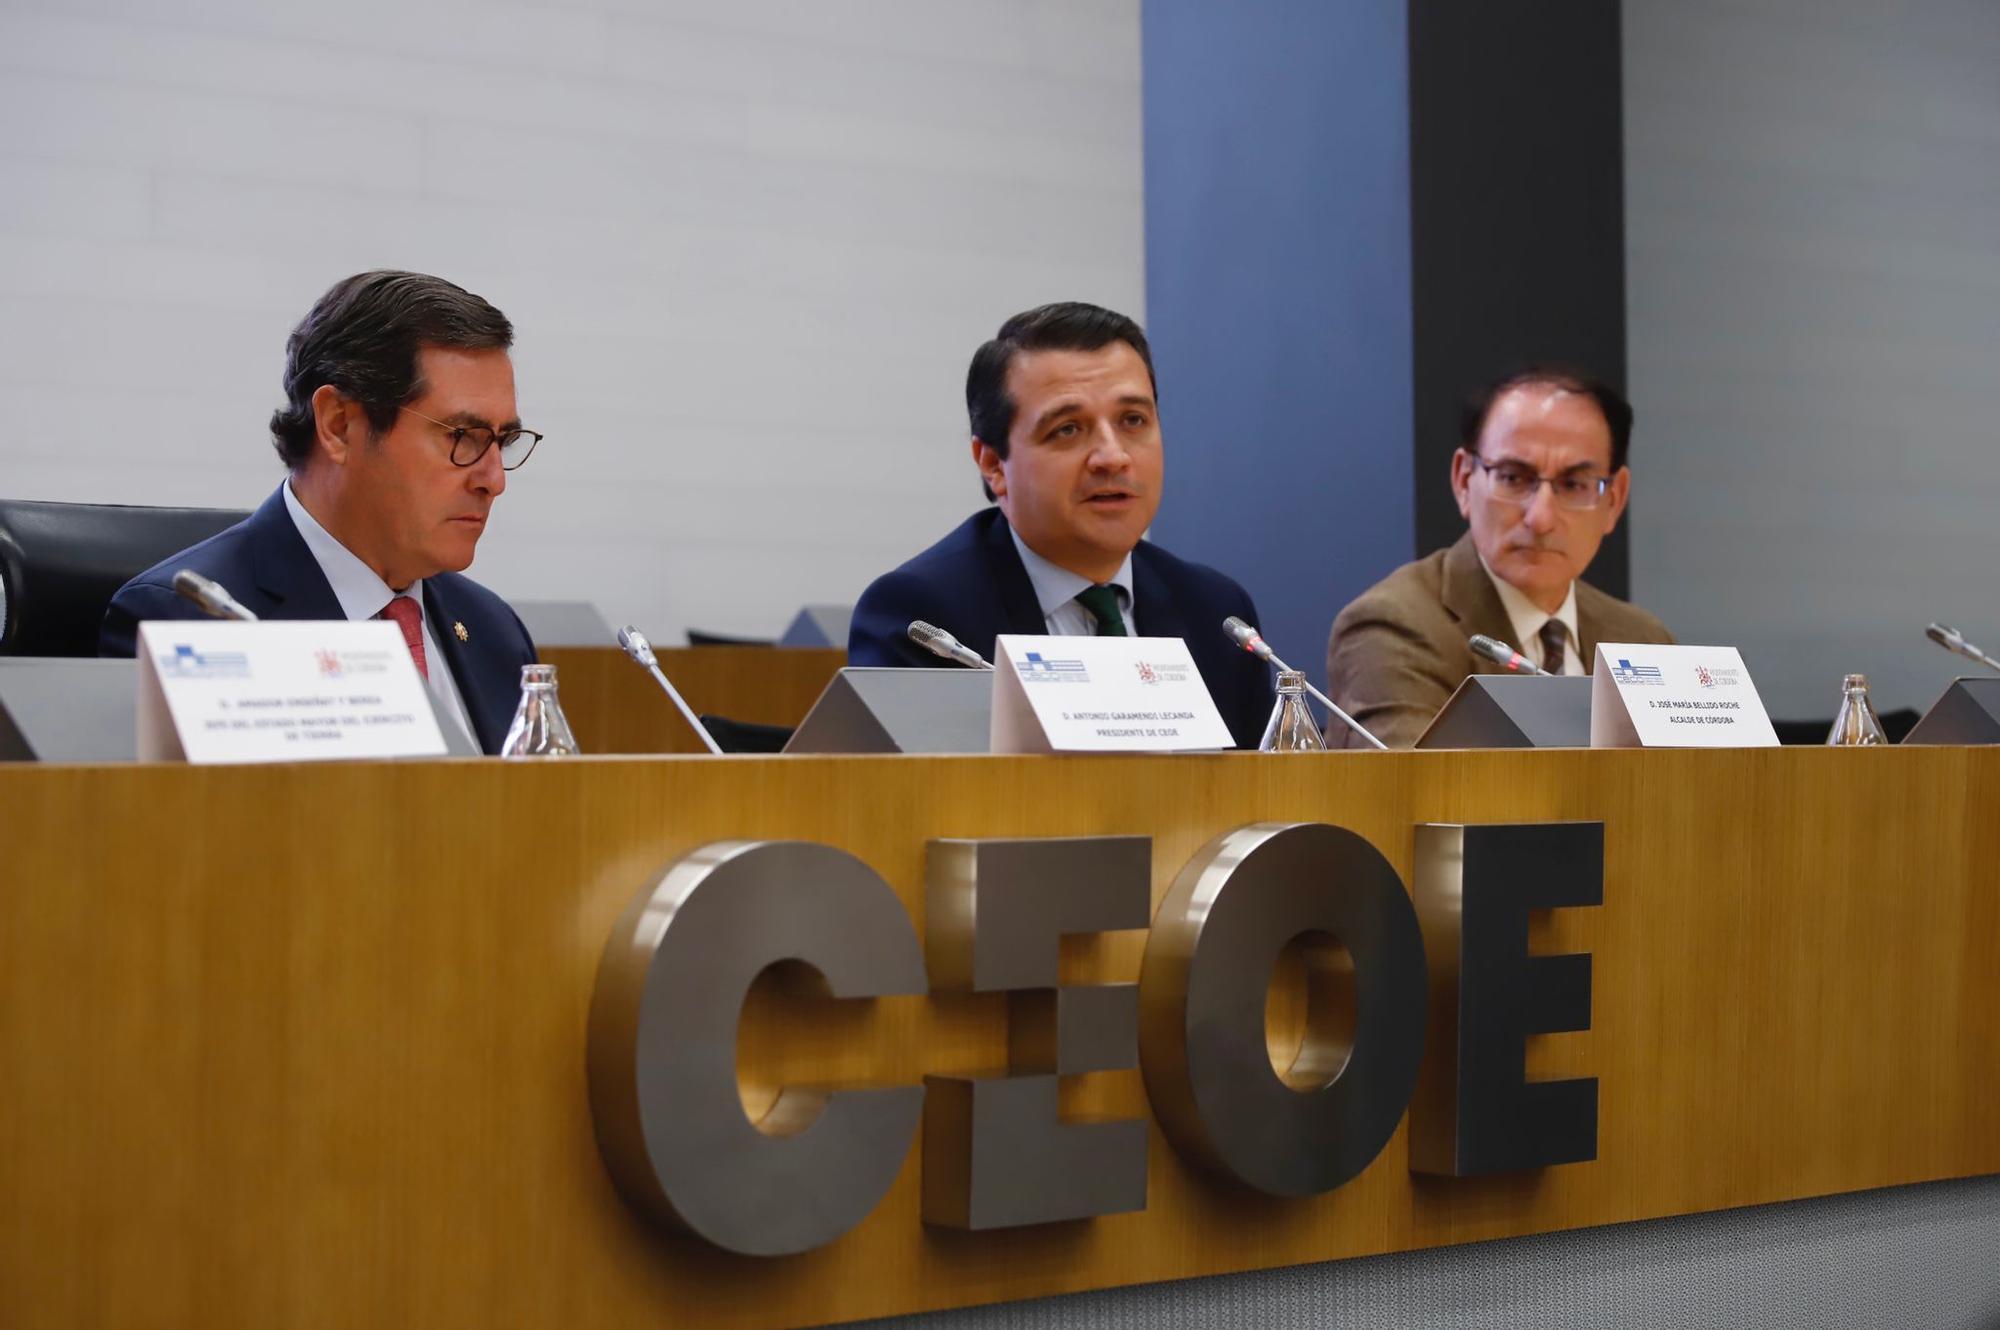 Córdoba exhibe su atractivo inversor en Madrid